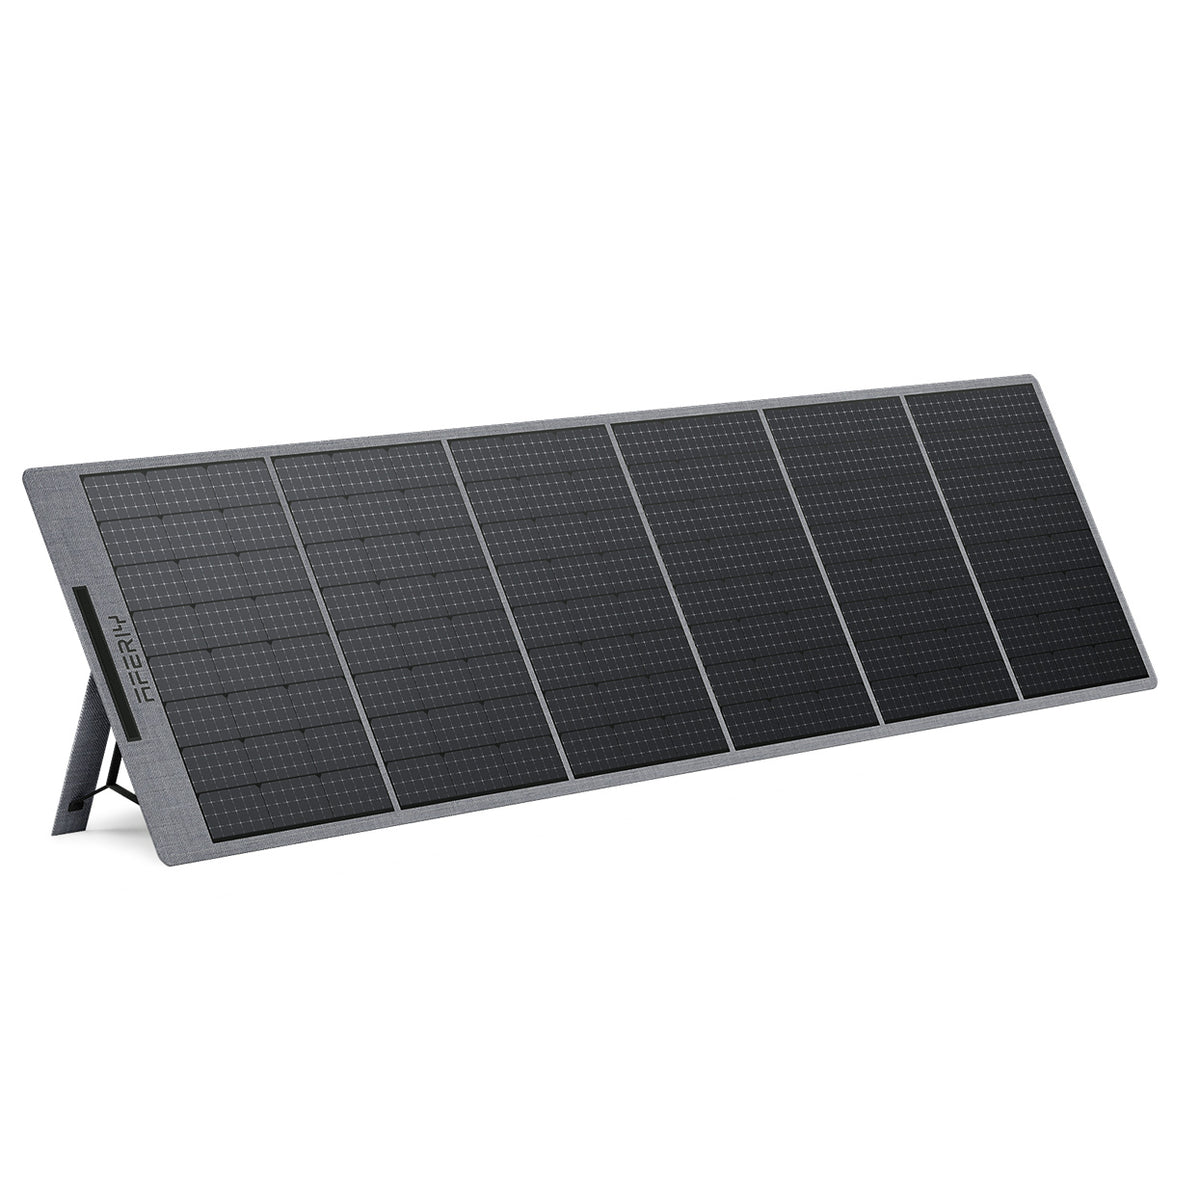 https://fr.aferiy.com/cdn/shop/files/AFERIY-_AF-S400-Portable-Solar-Panel-400W-_2_1200x.jpg?v=1691058241